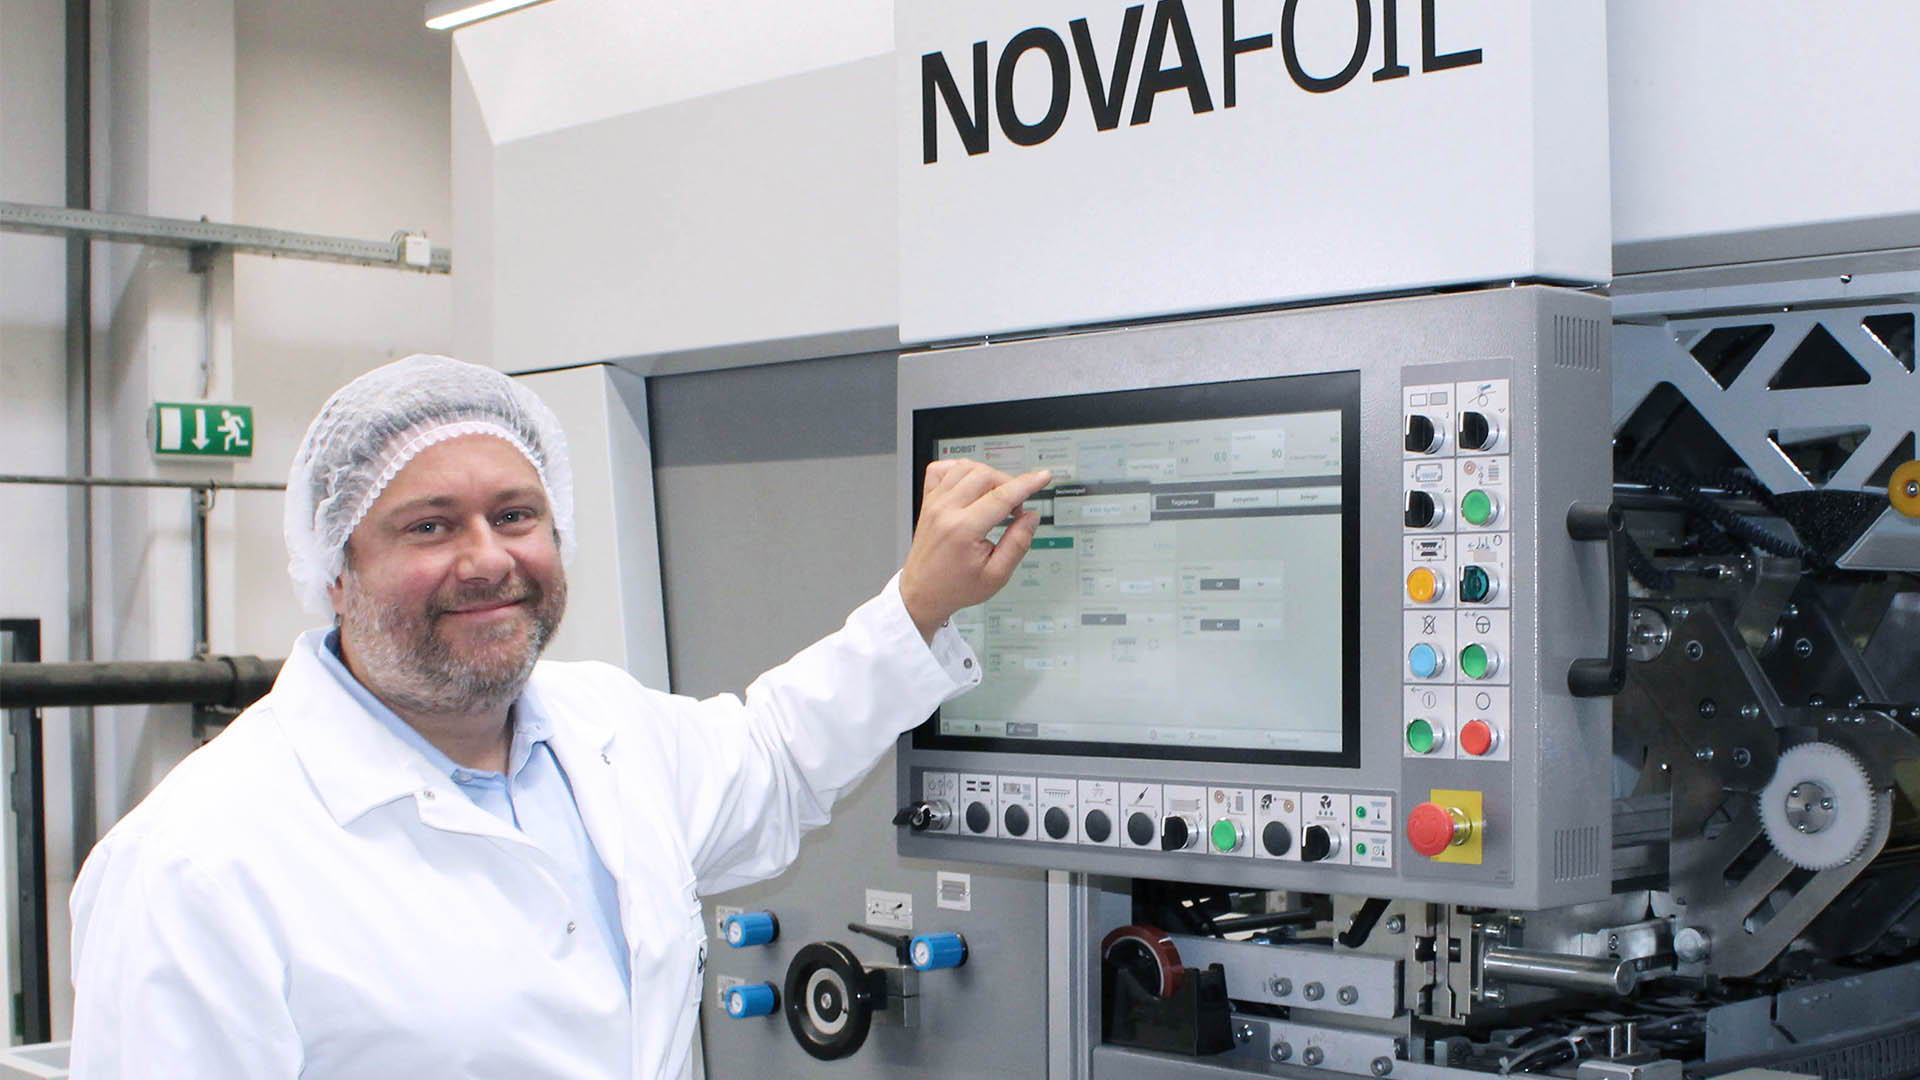 Йоханнес Кнапп демонстрирует удобство управления прессом NOVAFOIL 106 при использовании интерфейса «человек-машина» HMISPHERE.